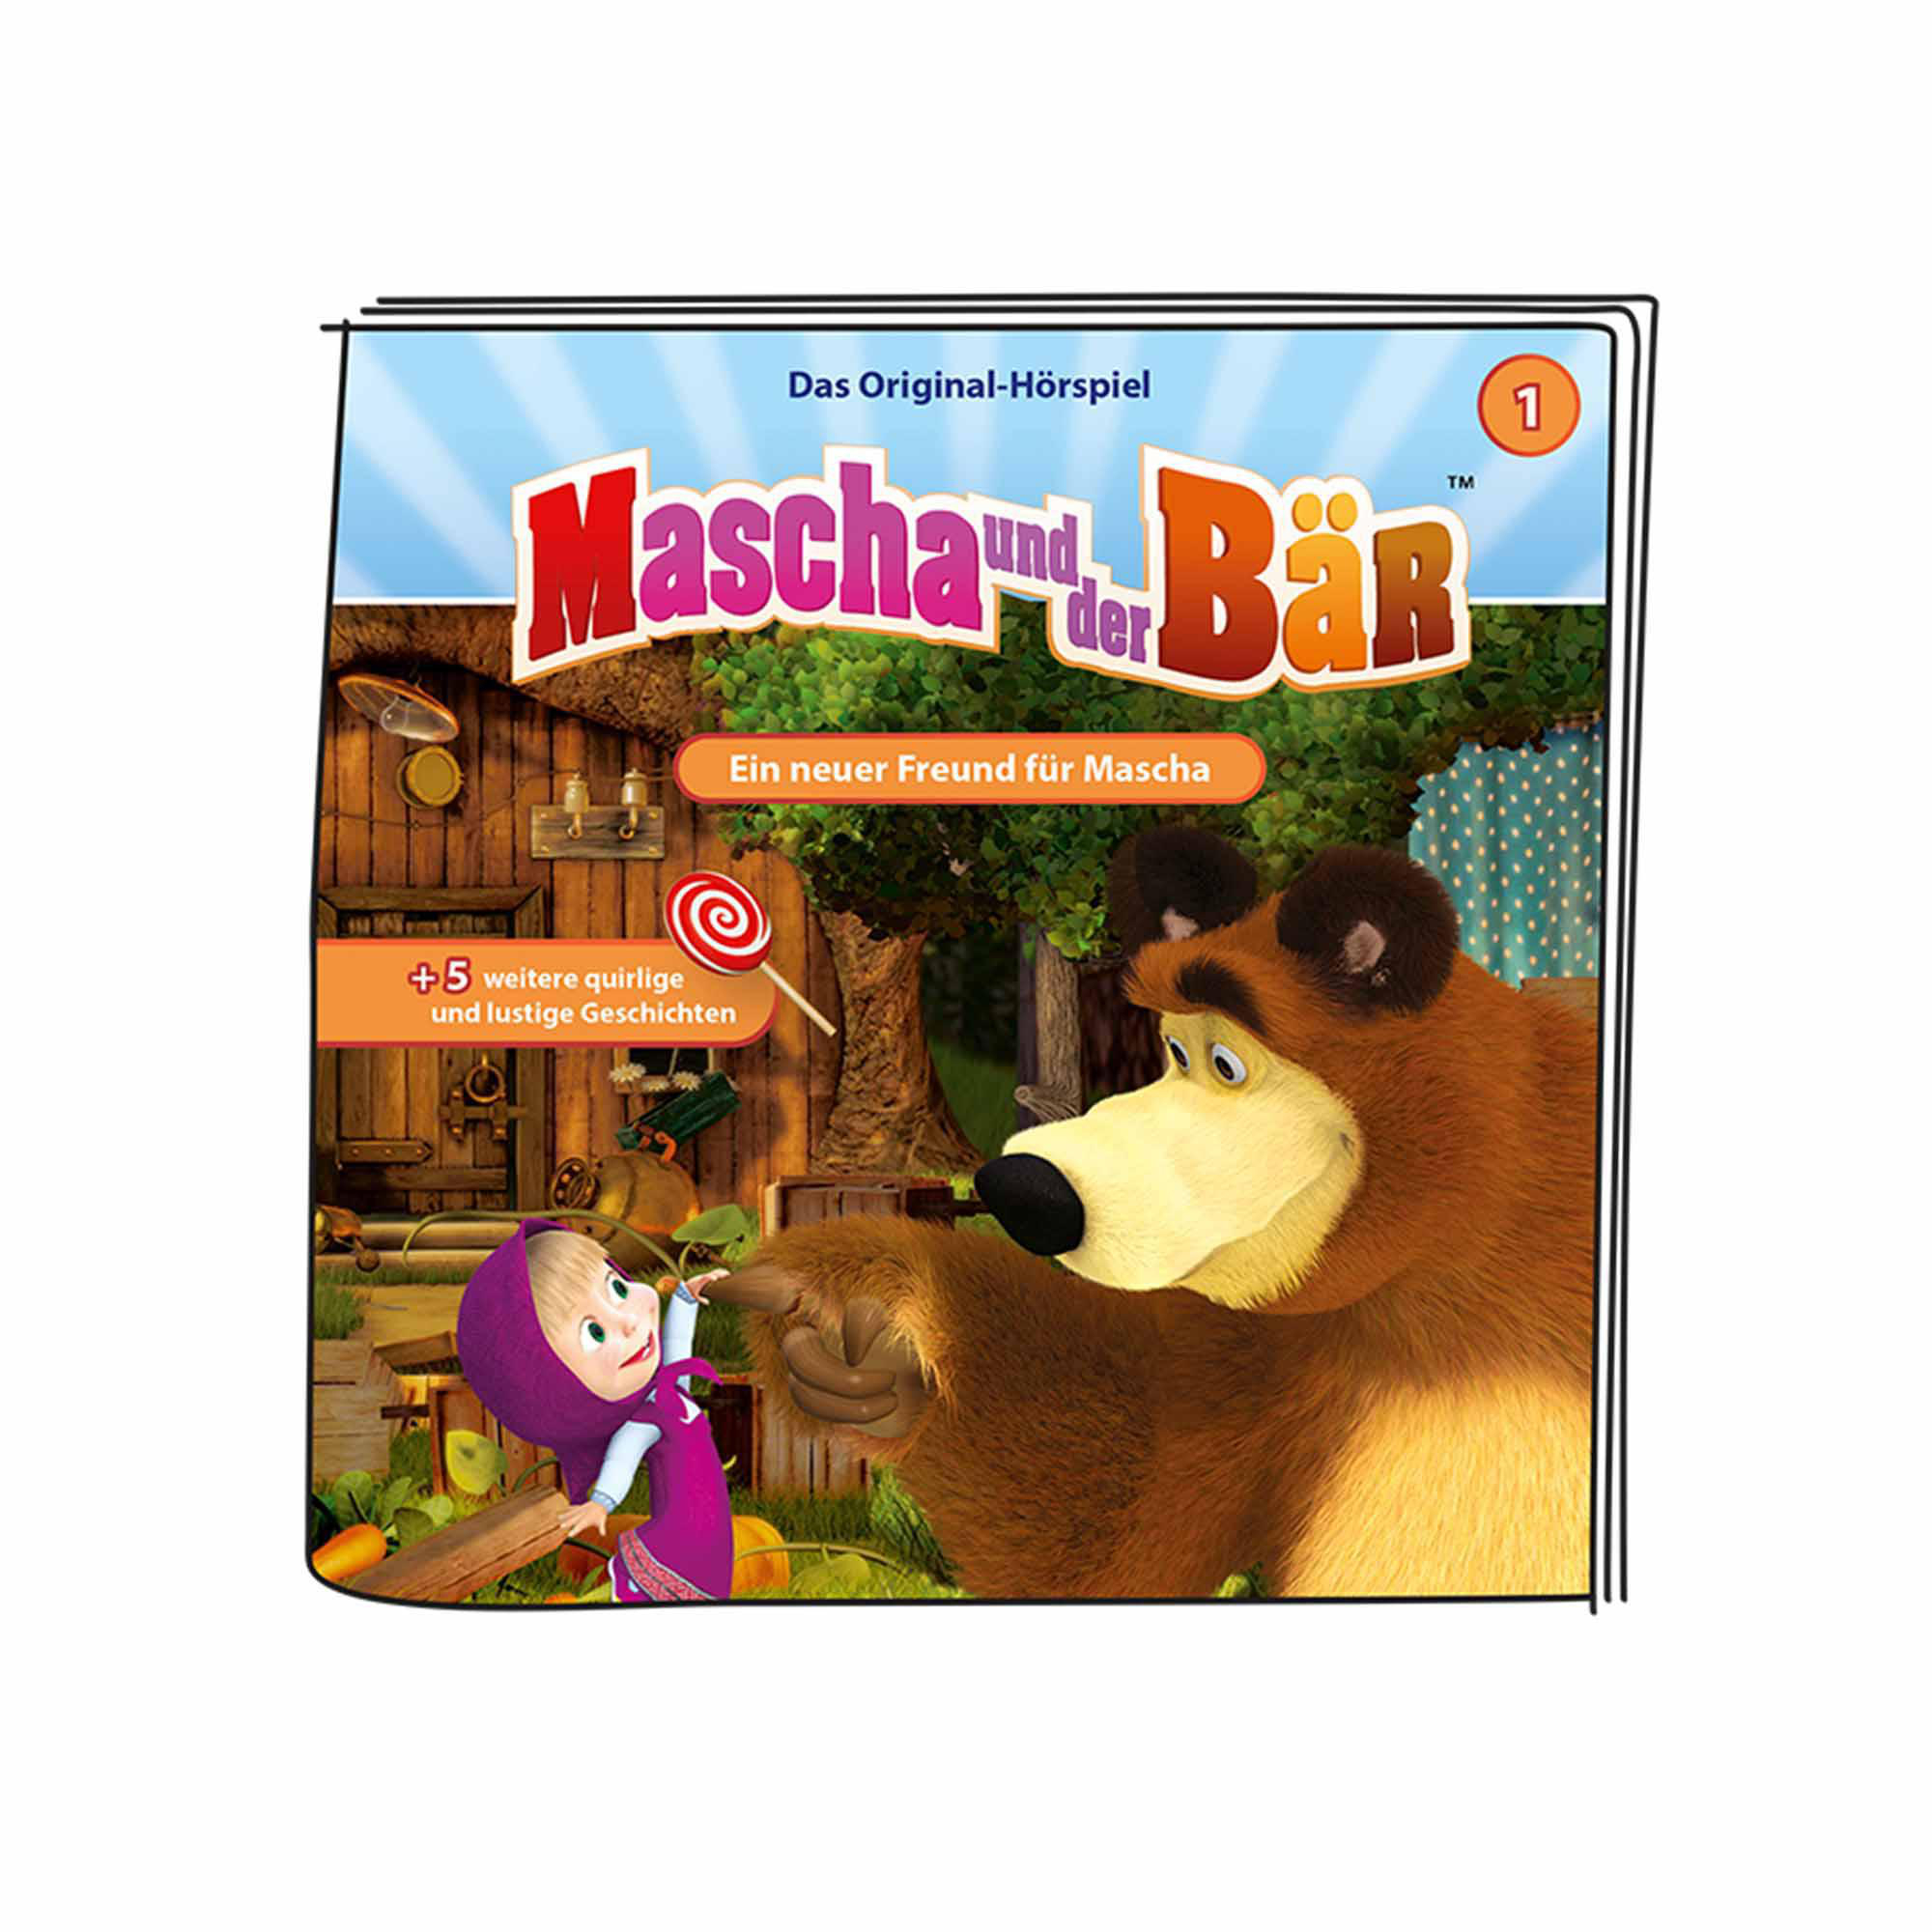 BOXINE neuer Tonie-Hörfigur: der Mascha - Hörfigur und Mascha für Freund Ein Bär